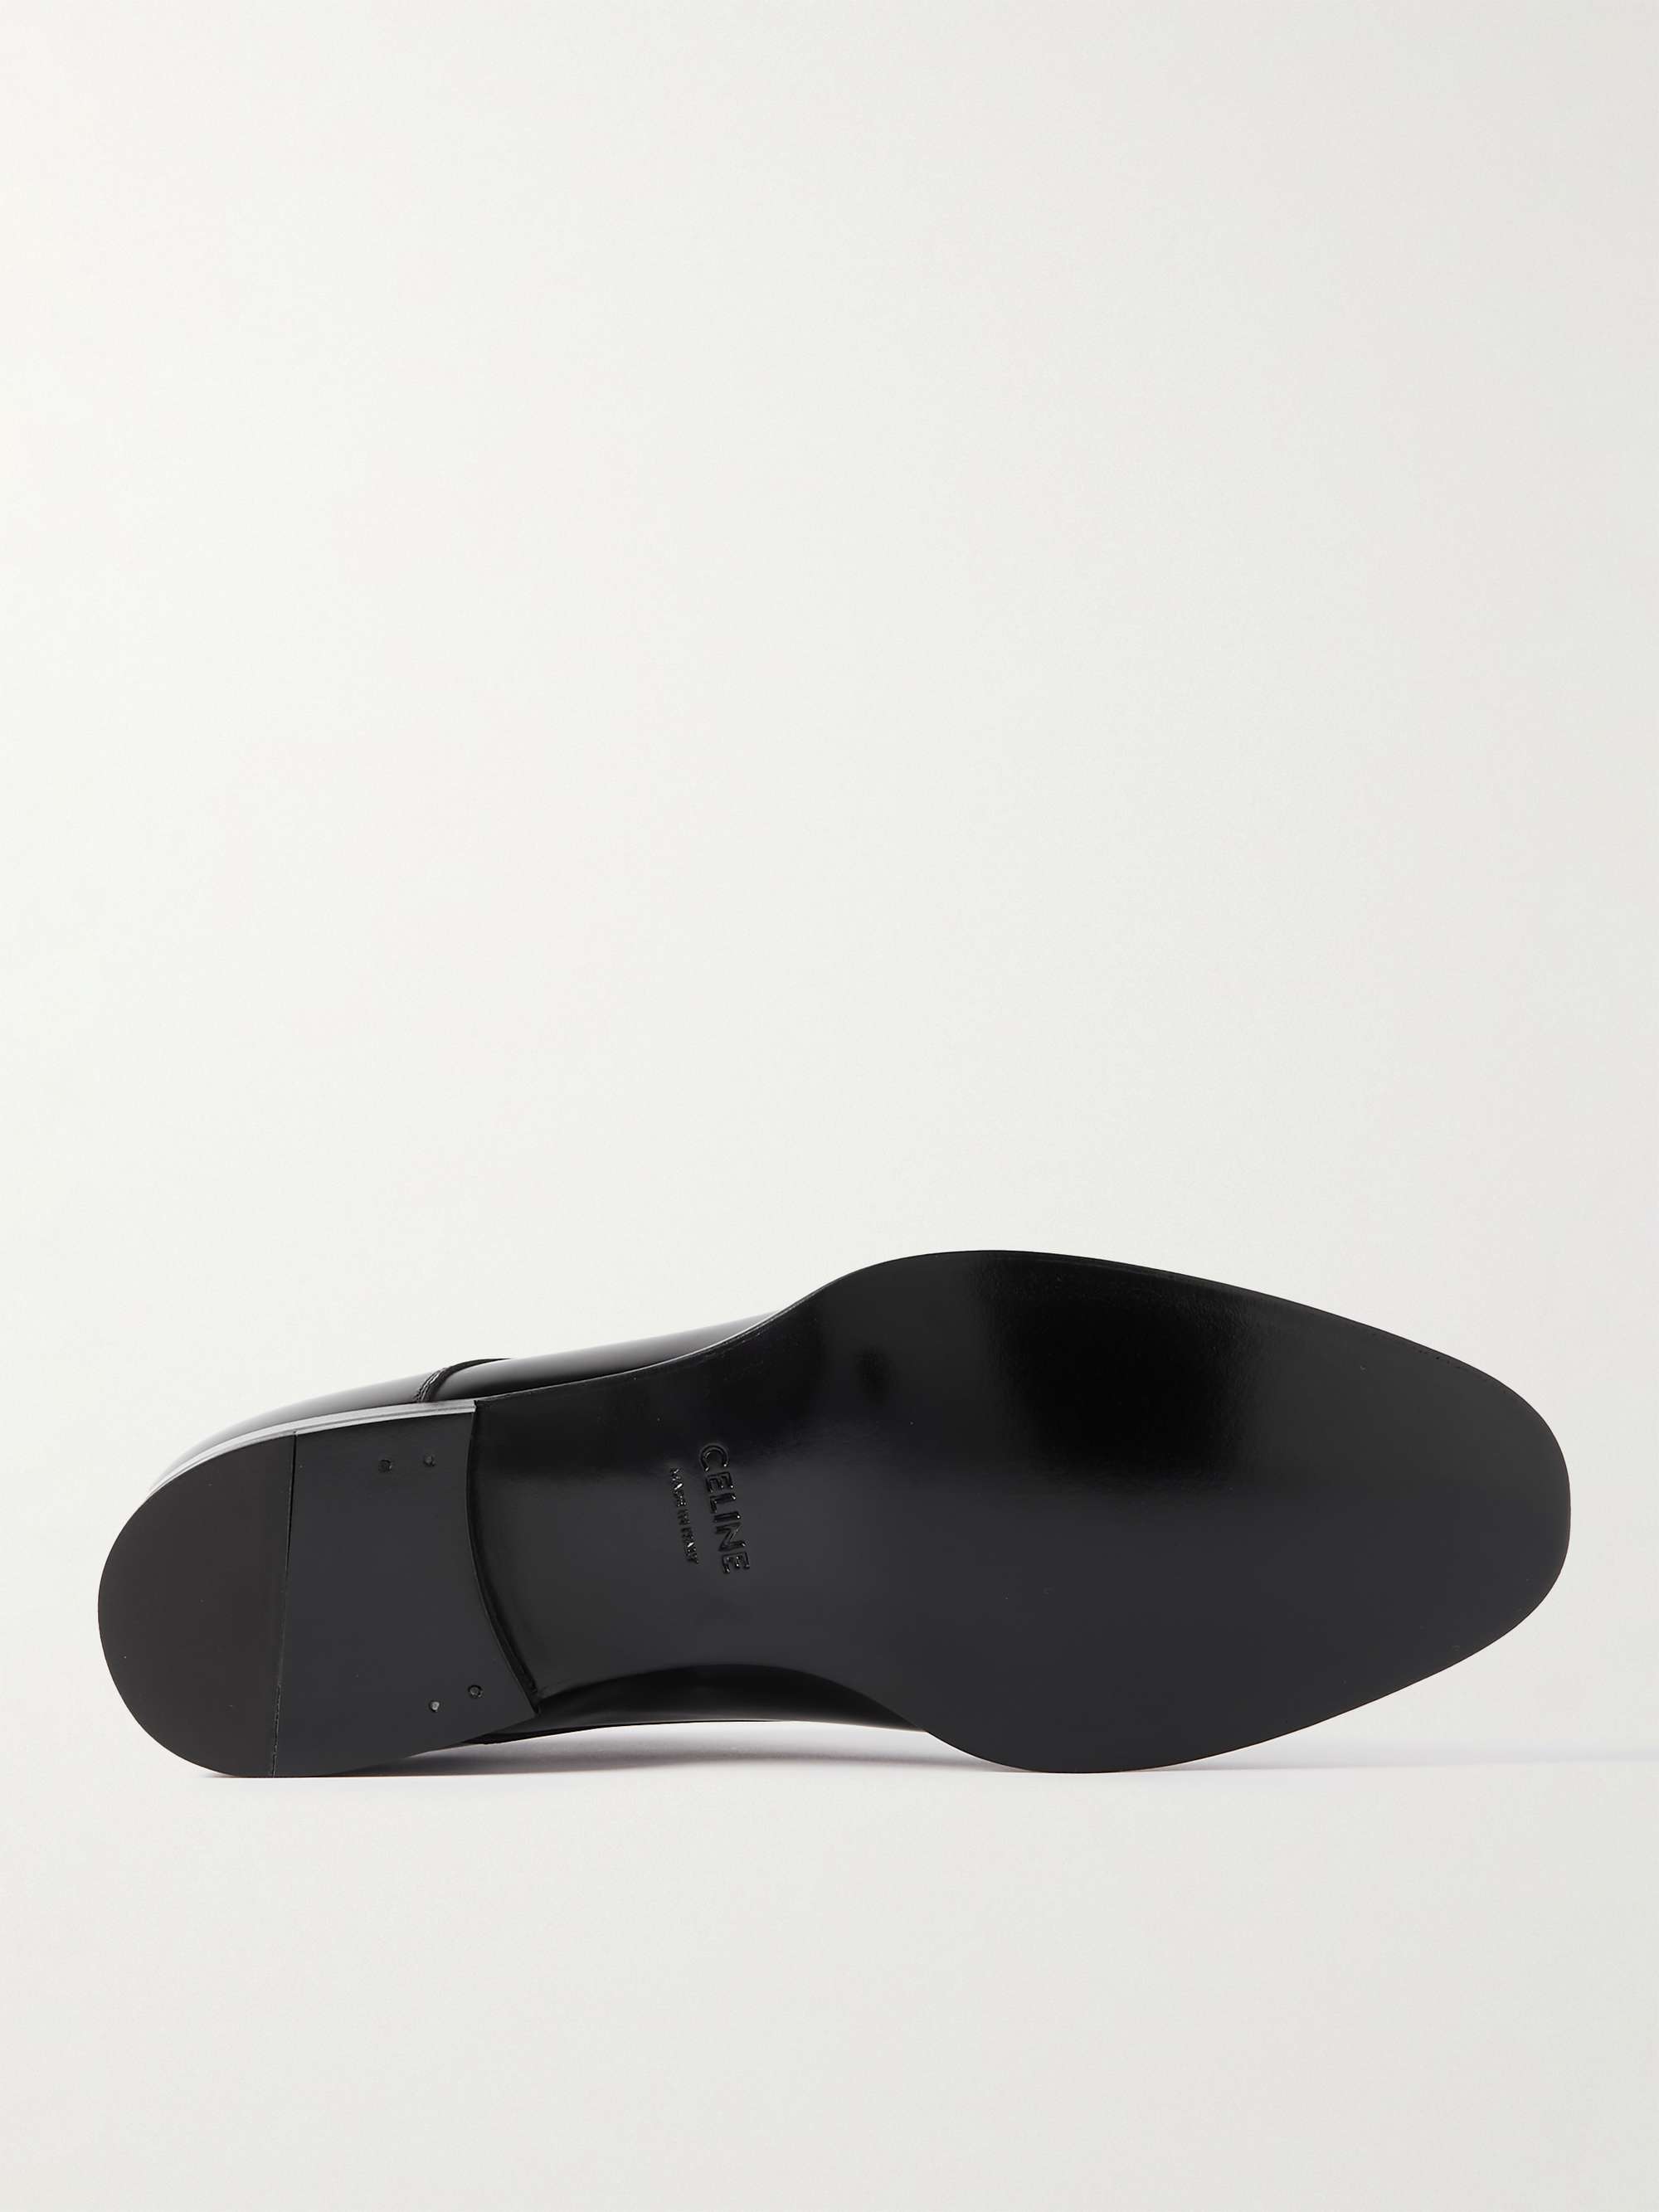 CELINE HOMME Leather Derby Shoes for Men | MR PORTER